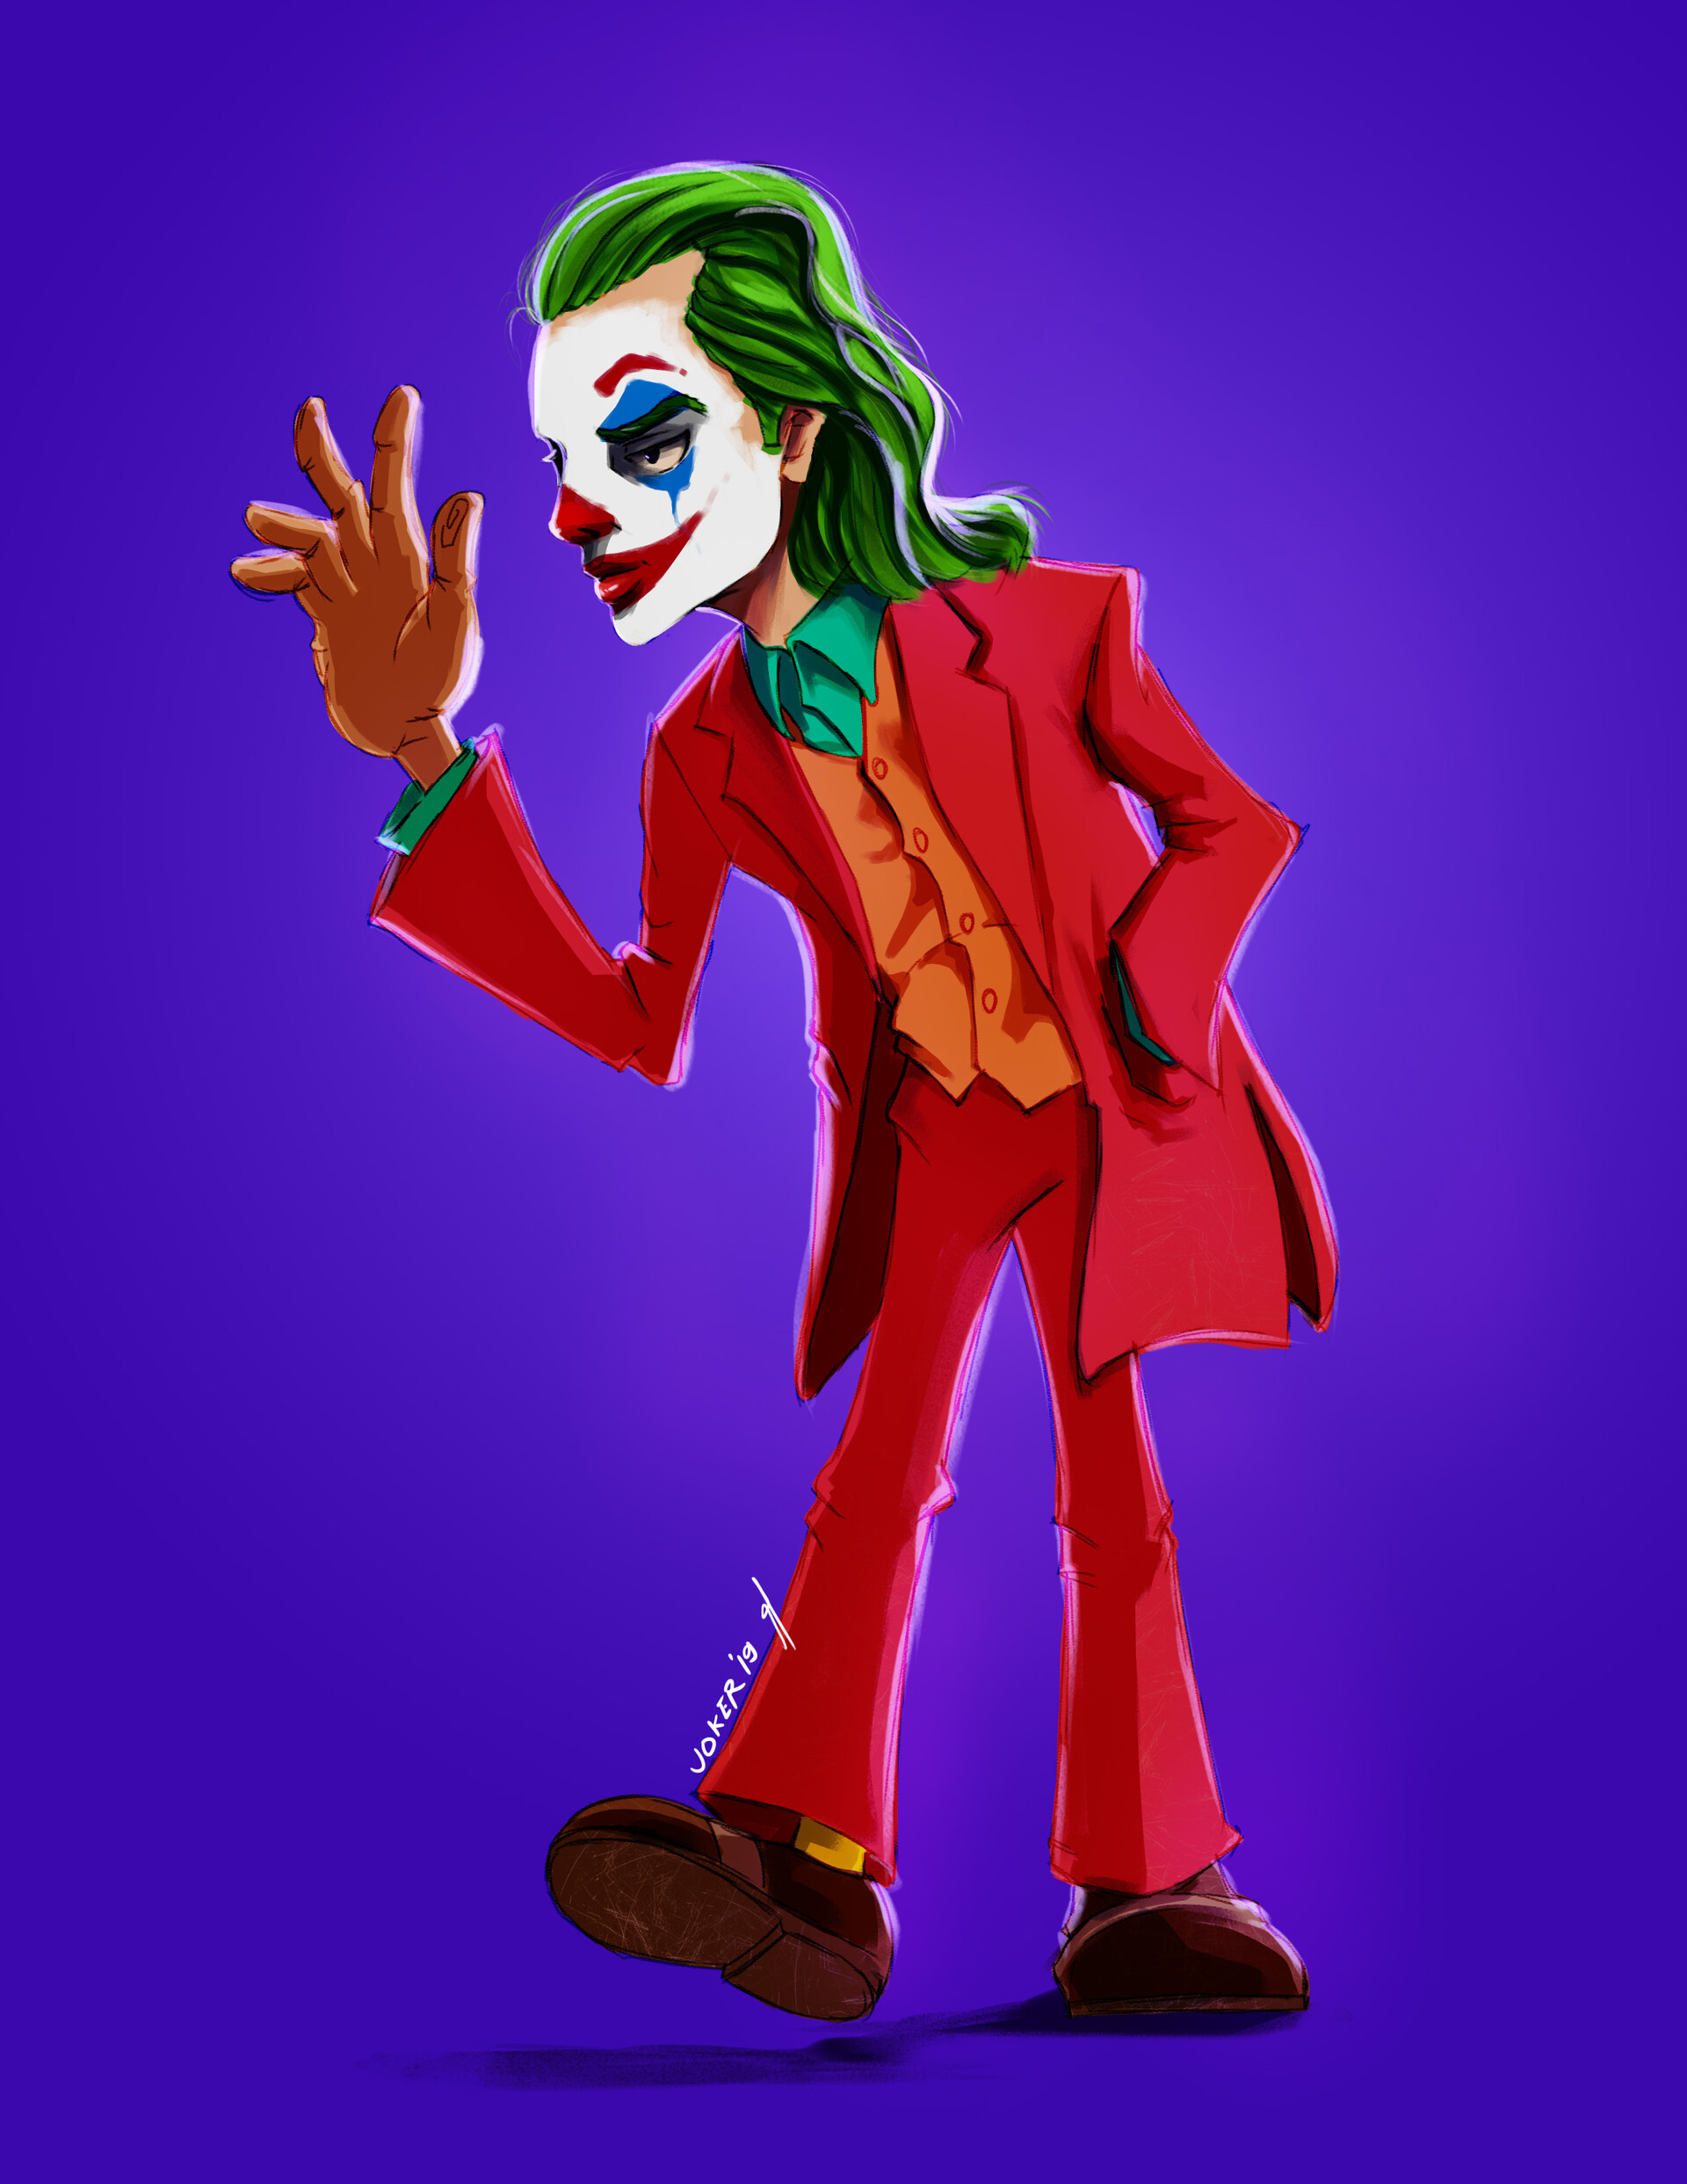 ArtStation - Cartoon Joker 2019 Fan art